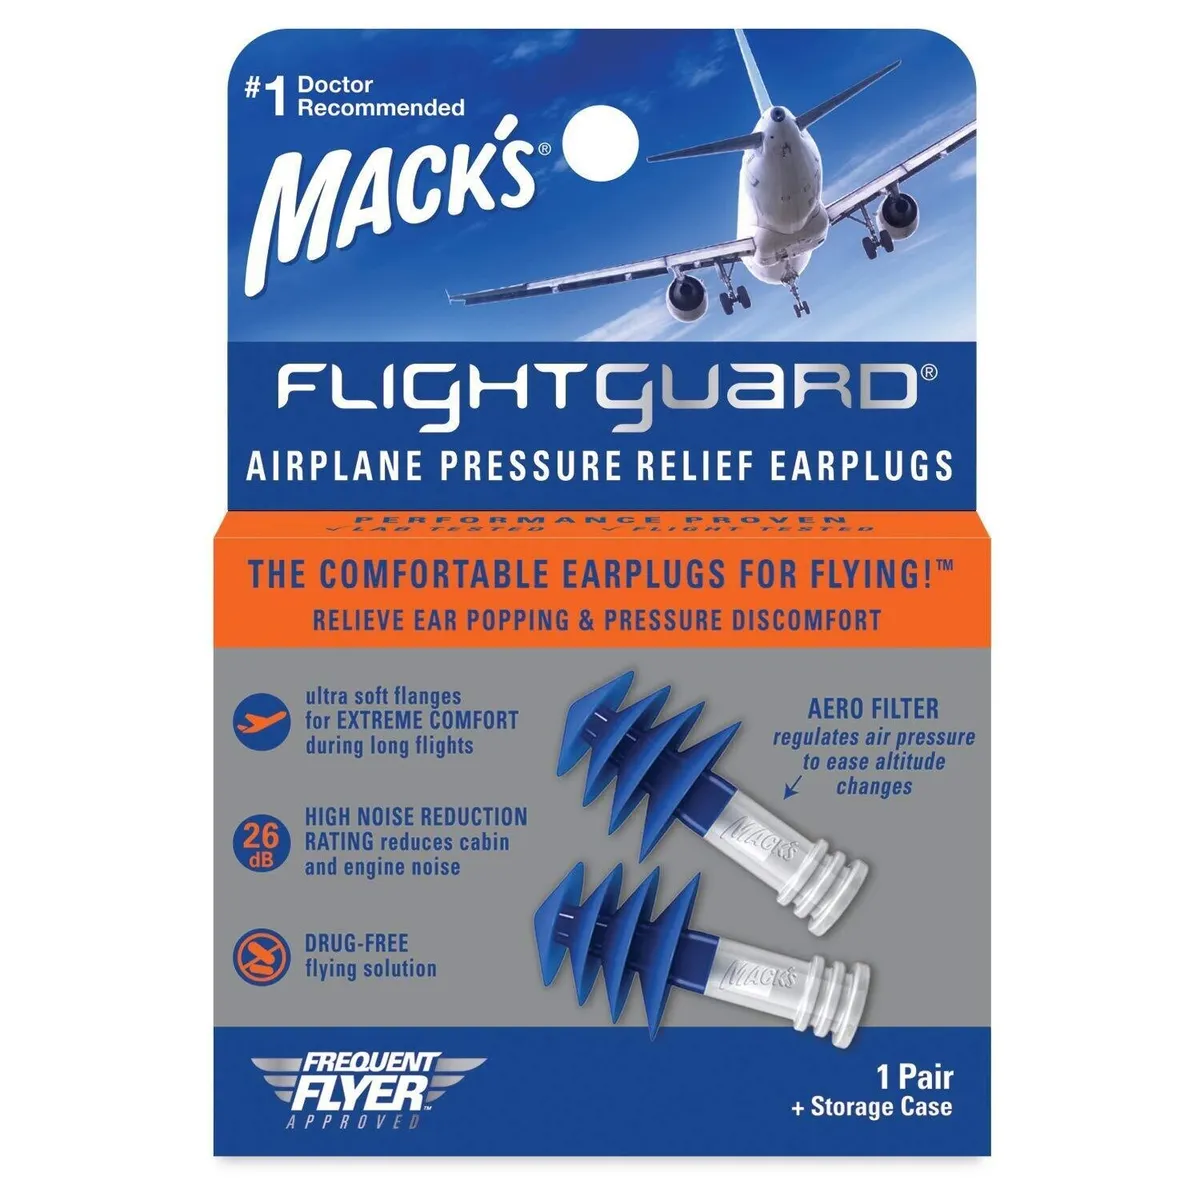 Mack's Flightguard Avion Décompression Bouchons - 26dB Nrr - Pour Voyage